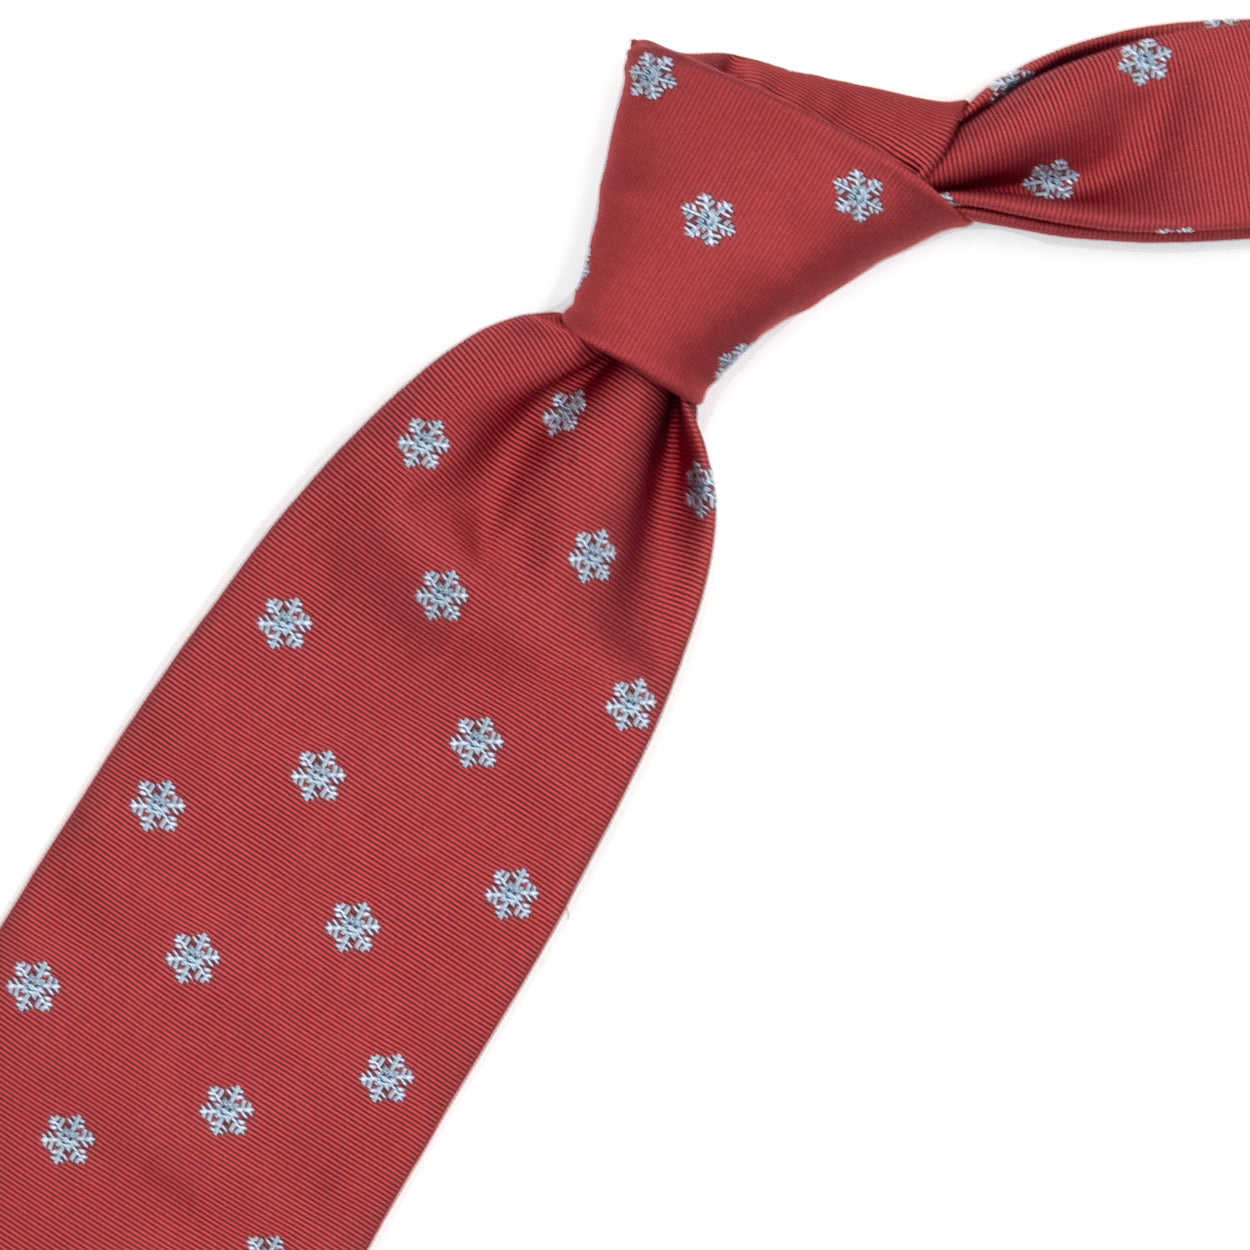 Cravatta rossa con fiocchi di neve bianchi